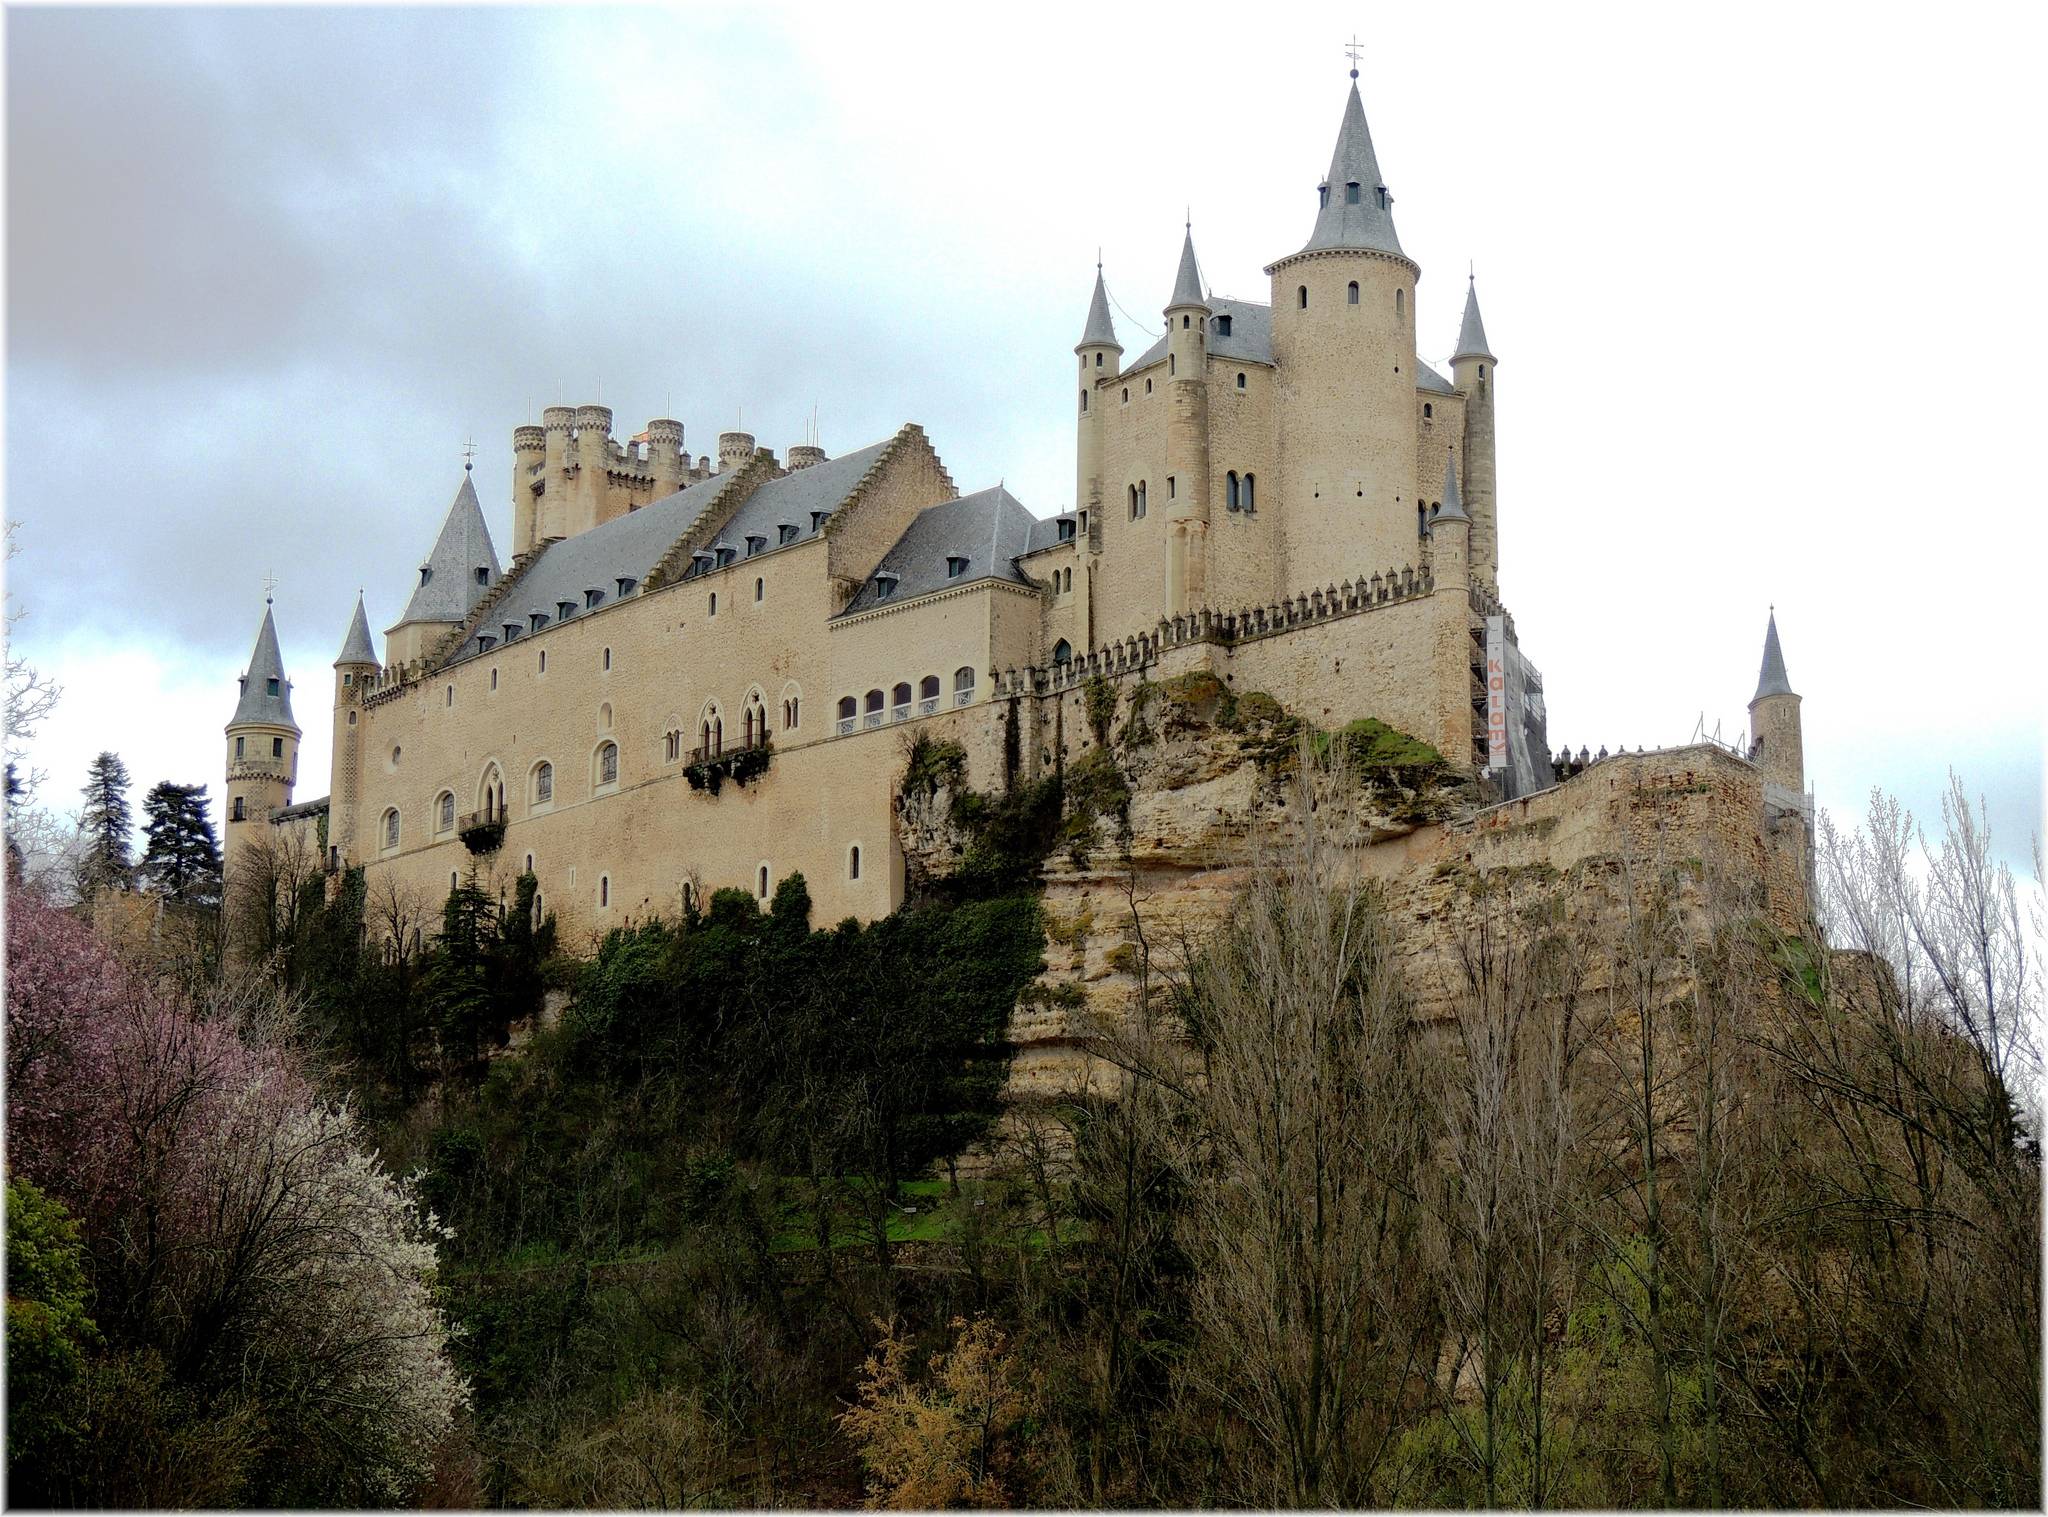 Los 4 castillos más bellos del mundo - Alcázar de Segovia